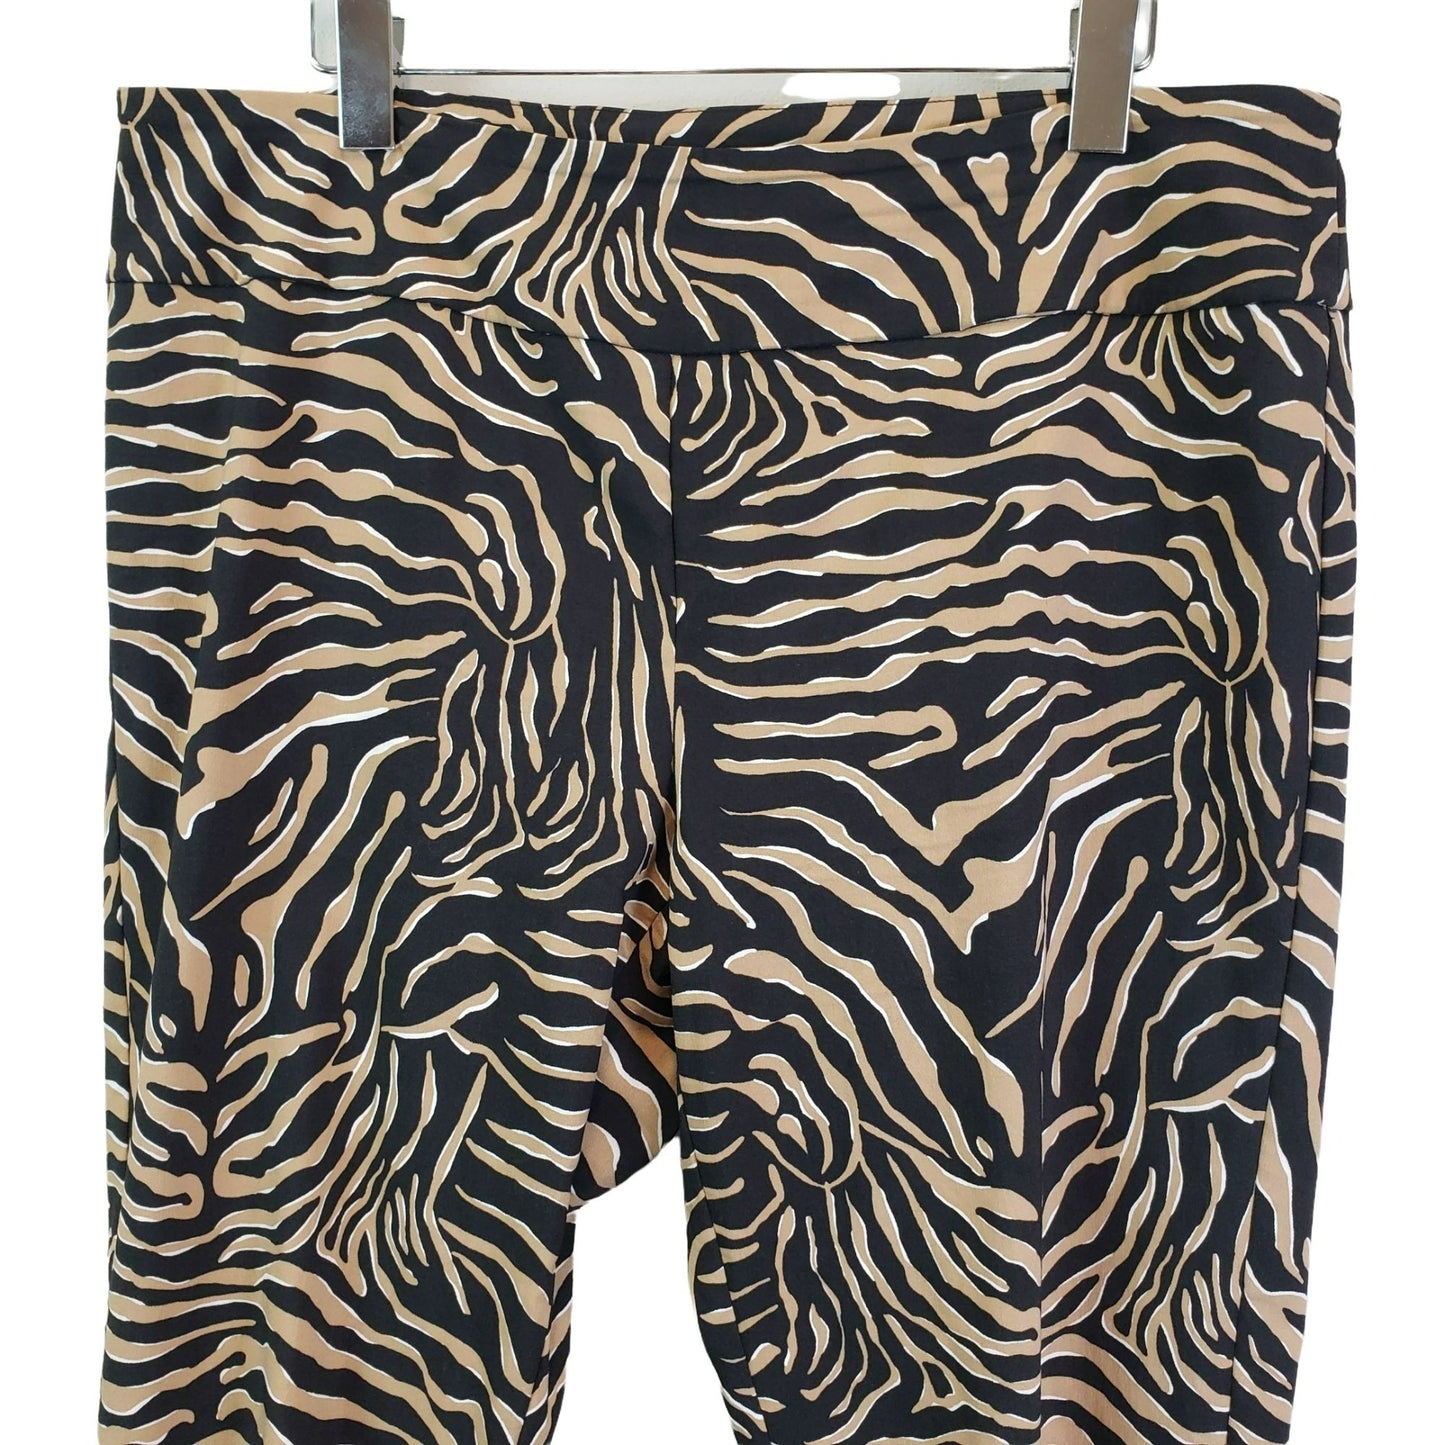 Elliott Lauren Zebra Print Pull On Pants